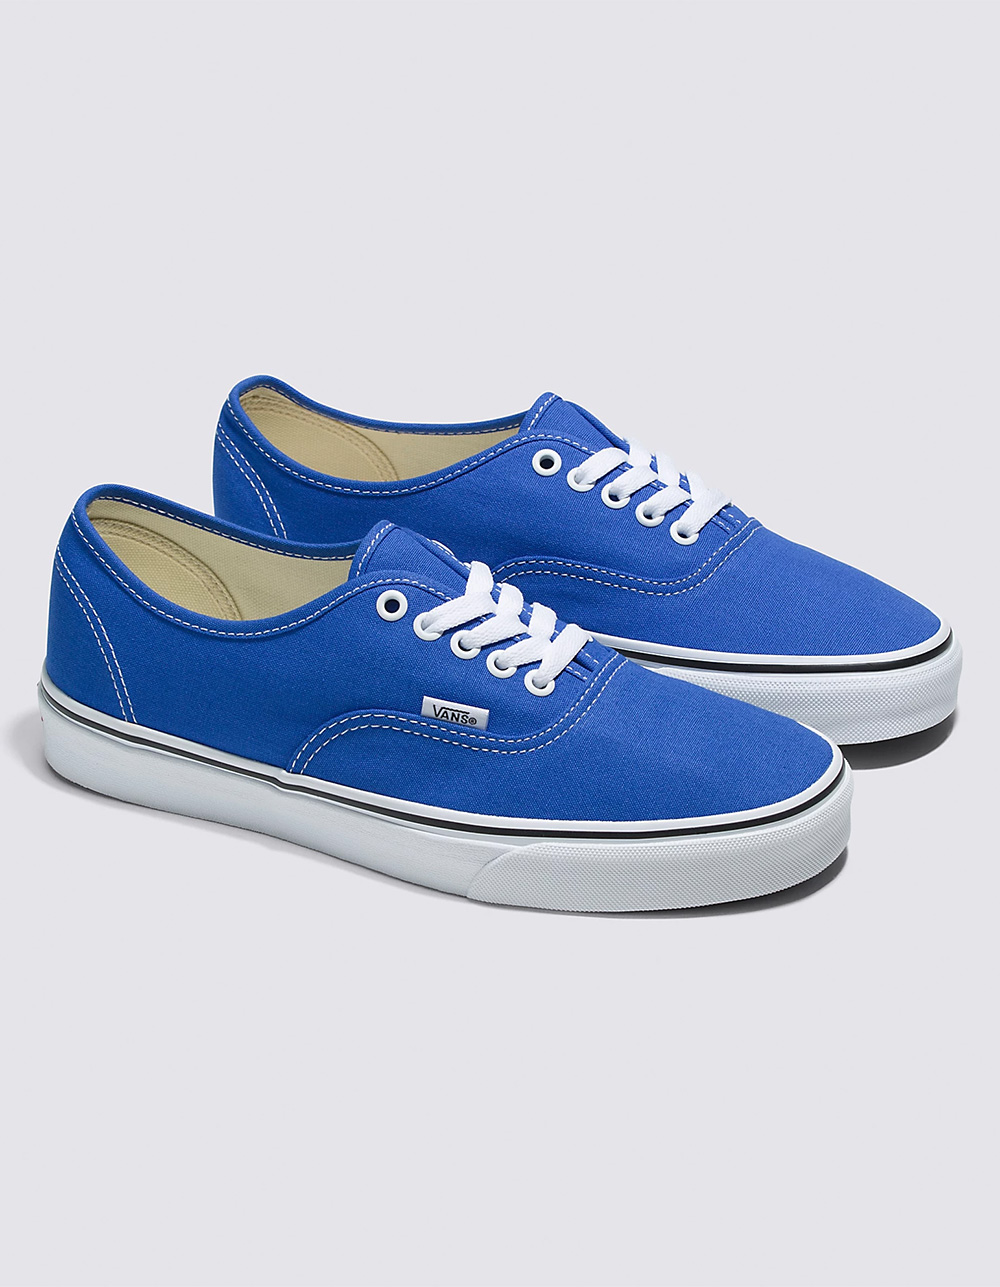 VANS Authentic Shoes - BLUE/WHT | Tillys